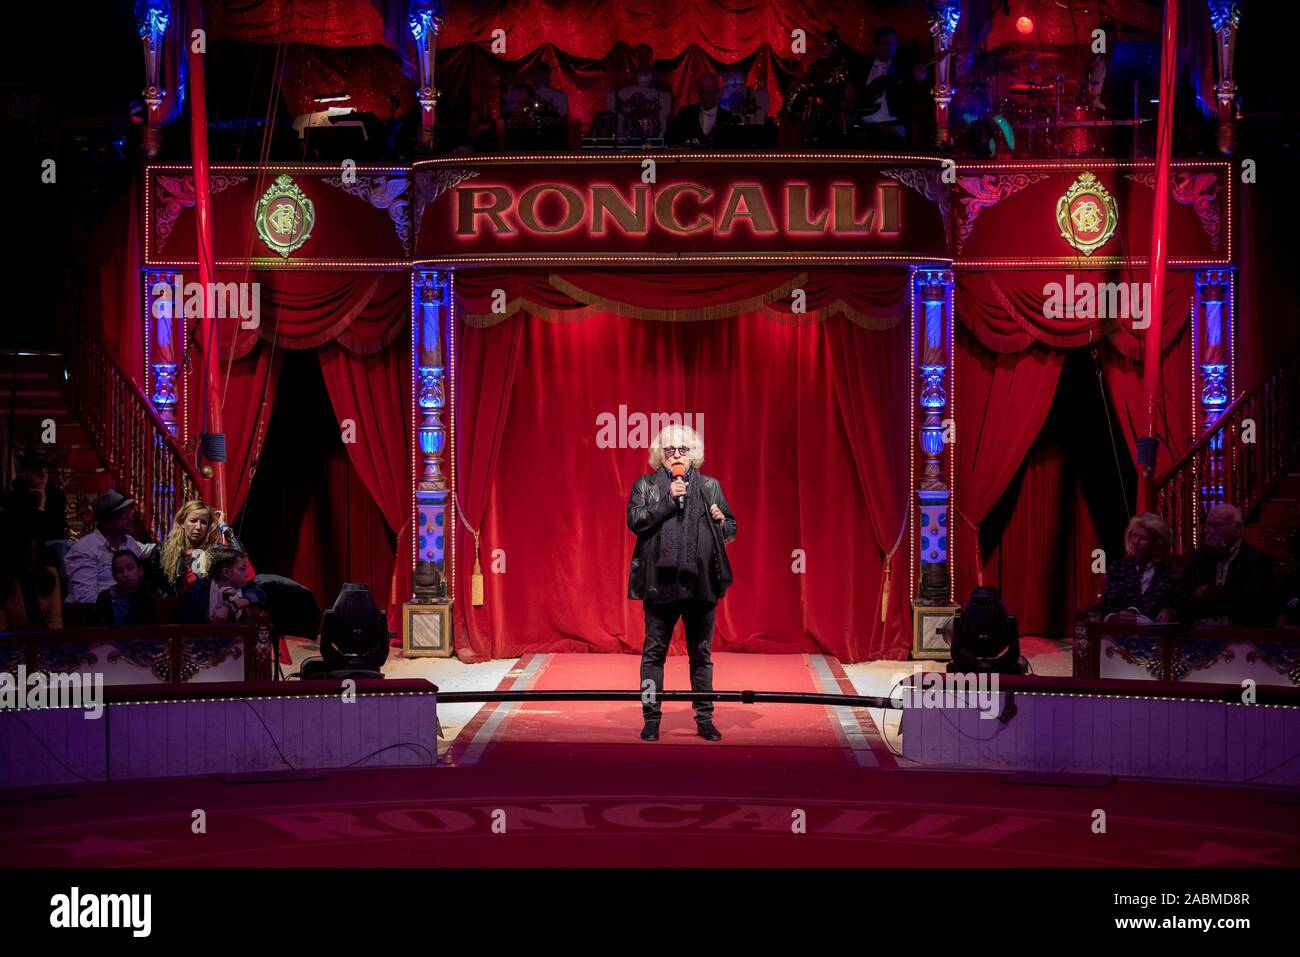 Sabato, 12 ottobre 2019, Direttore del circo Bernhard Paolo accoglierà il pubblico alla premiere di prestazioni a Roncallli a Monaco di Baviera superiore). [Traduzione automatizzata] Foto Stock